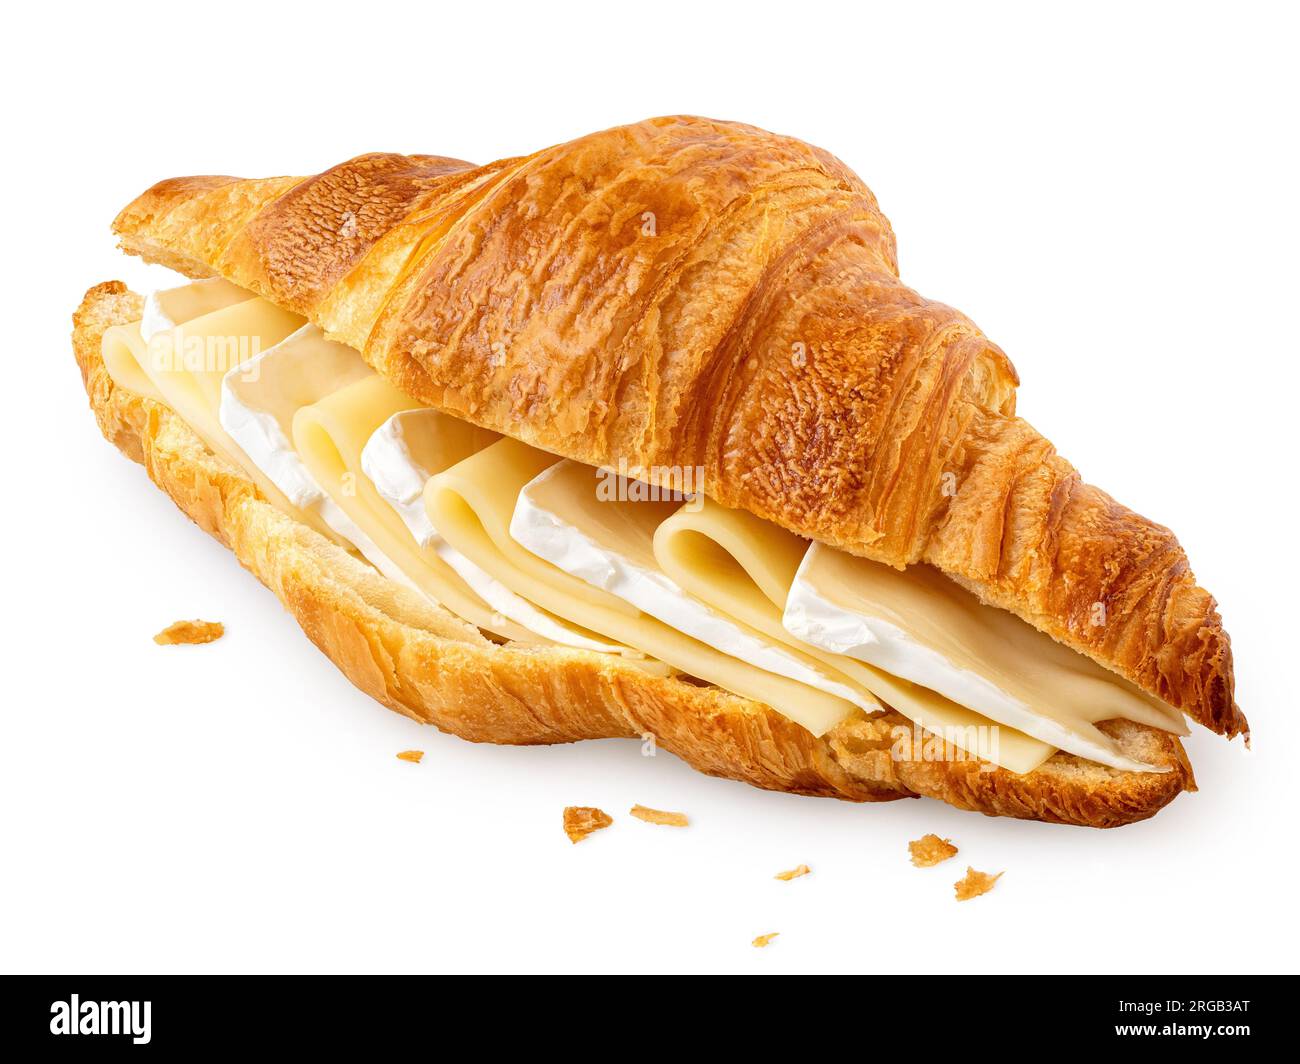 Croissant de queso relleno con rebanadas de edam y brie aisladas sobre blanco. Migas. Foto de stock